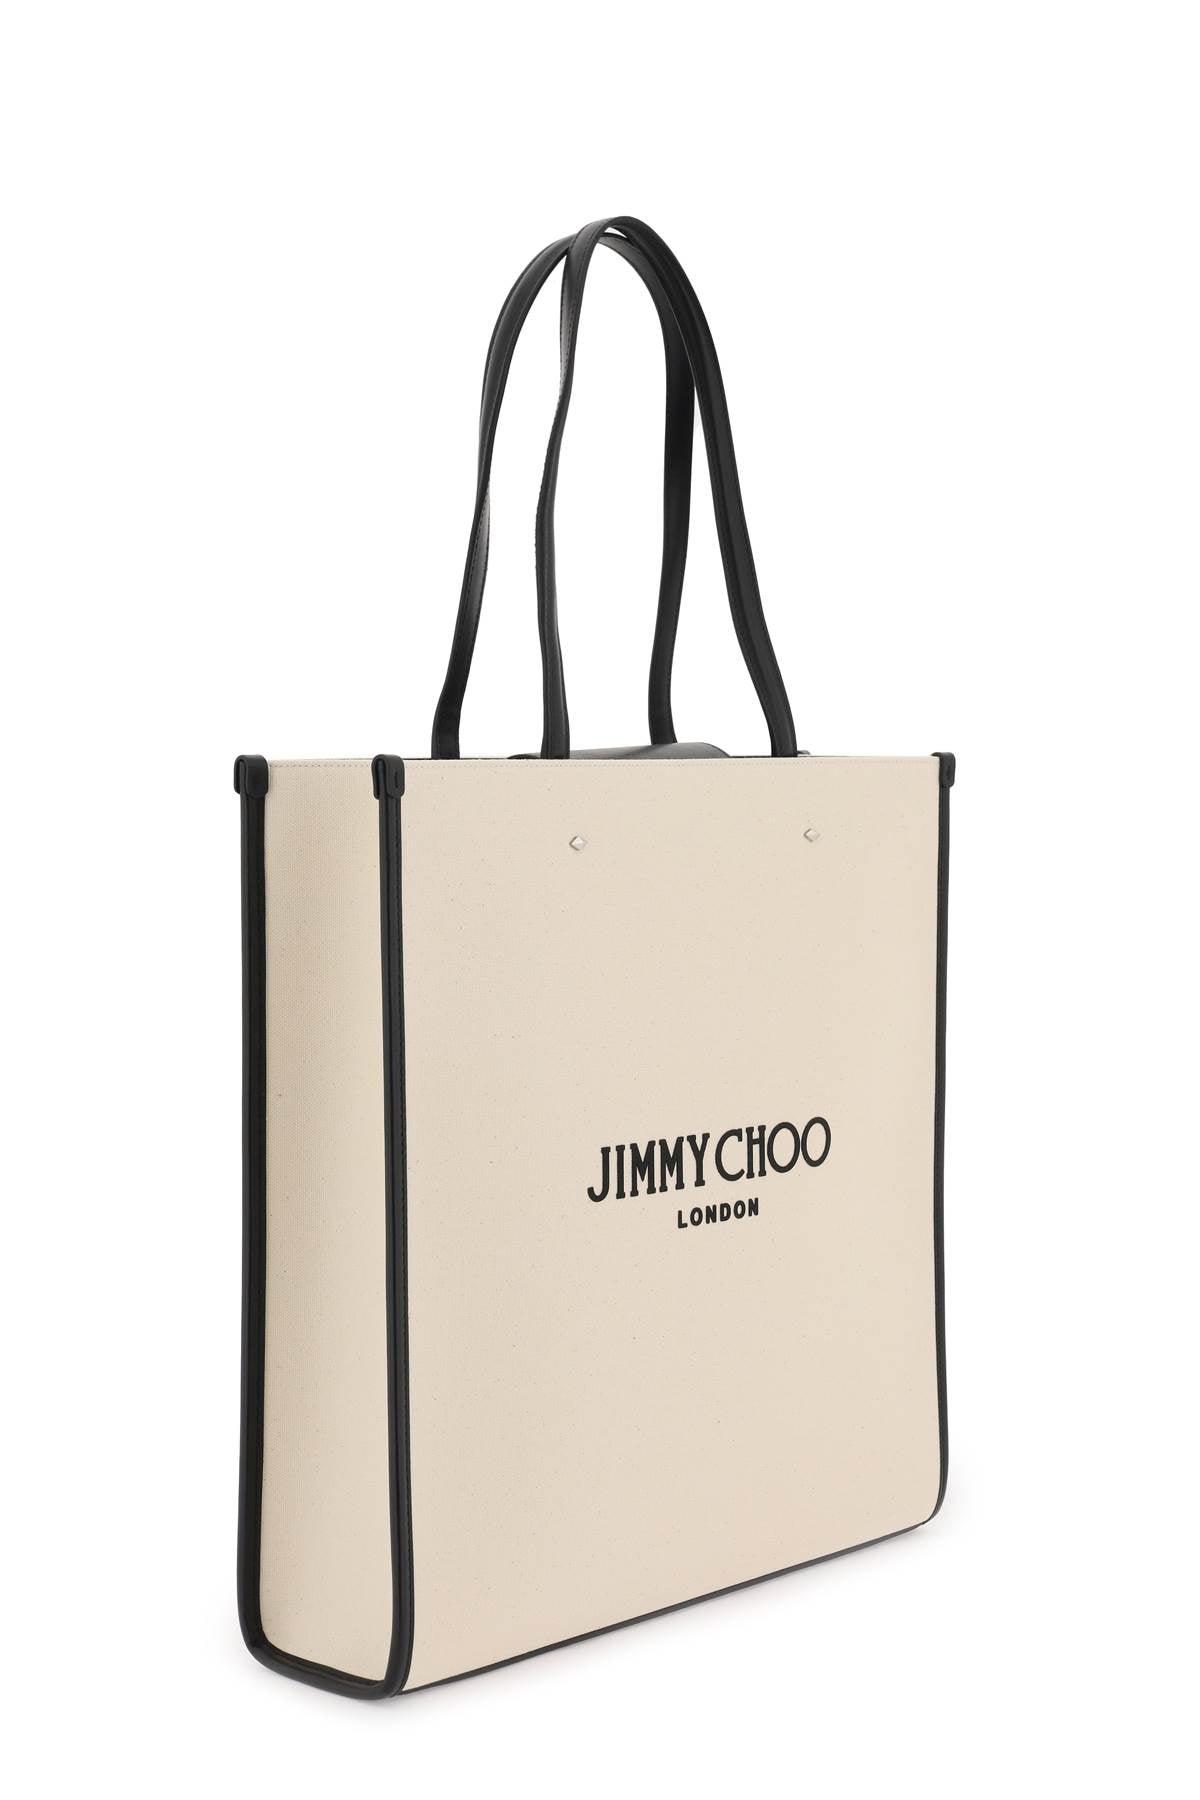 Jimmy Choo N/S Canvas Tote Bag - JOHN JULIA